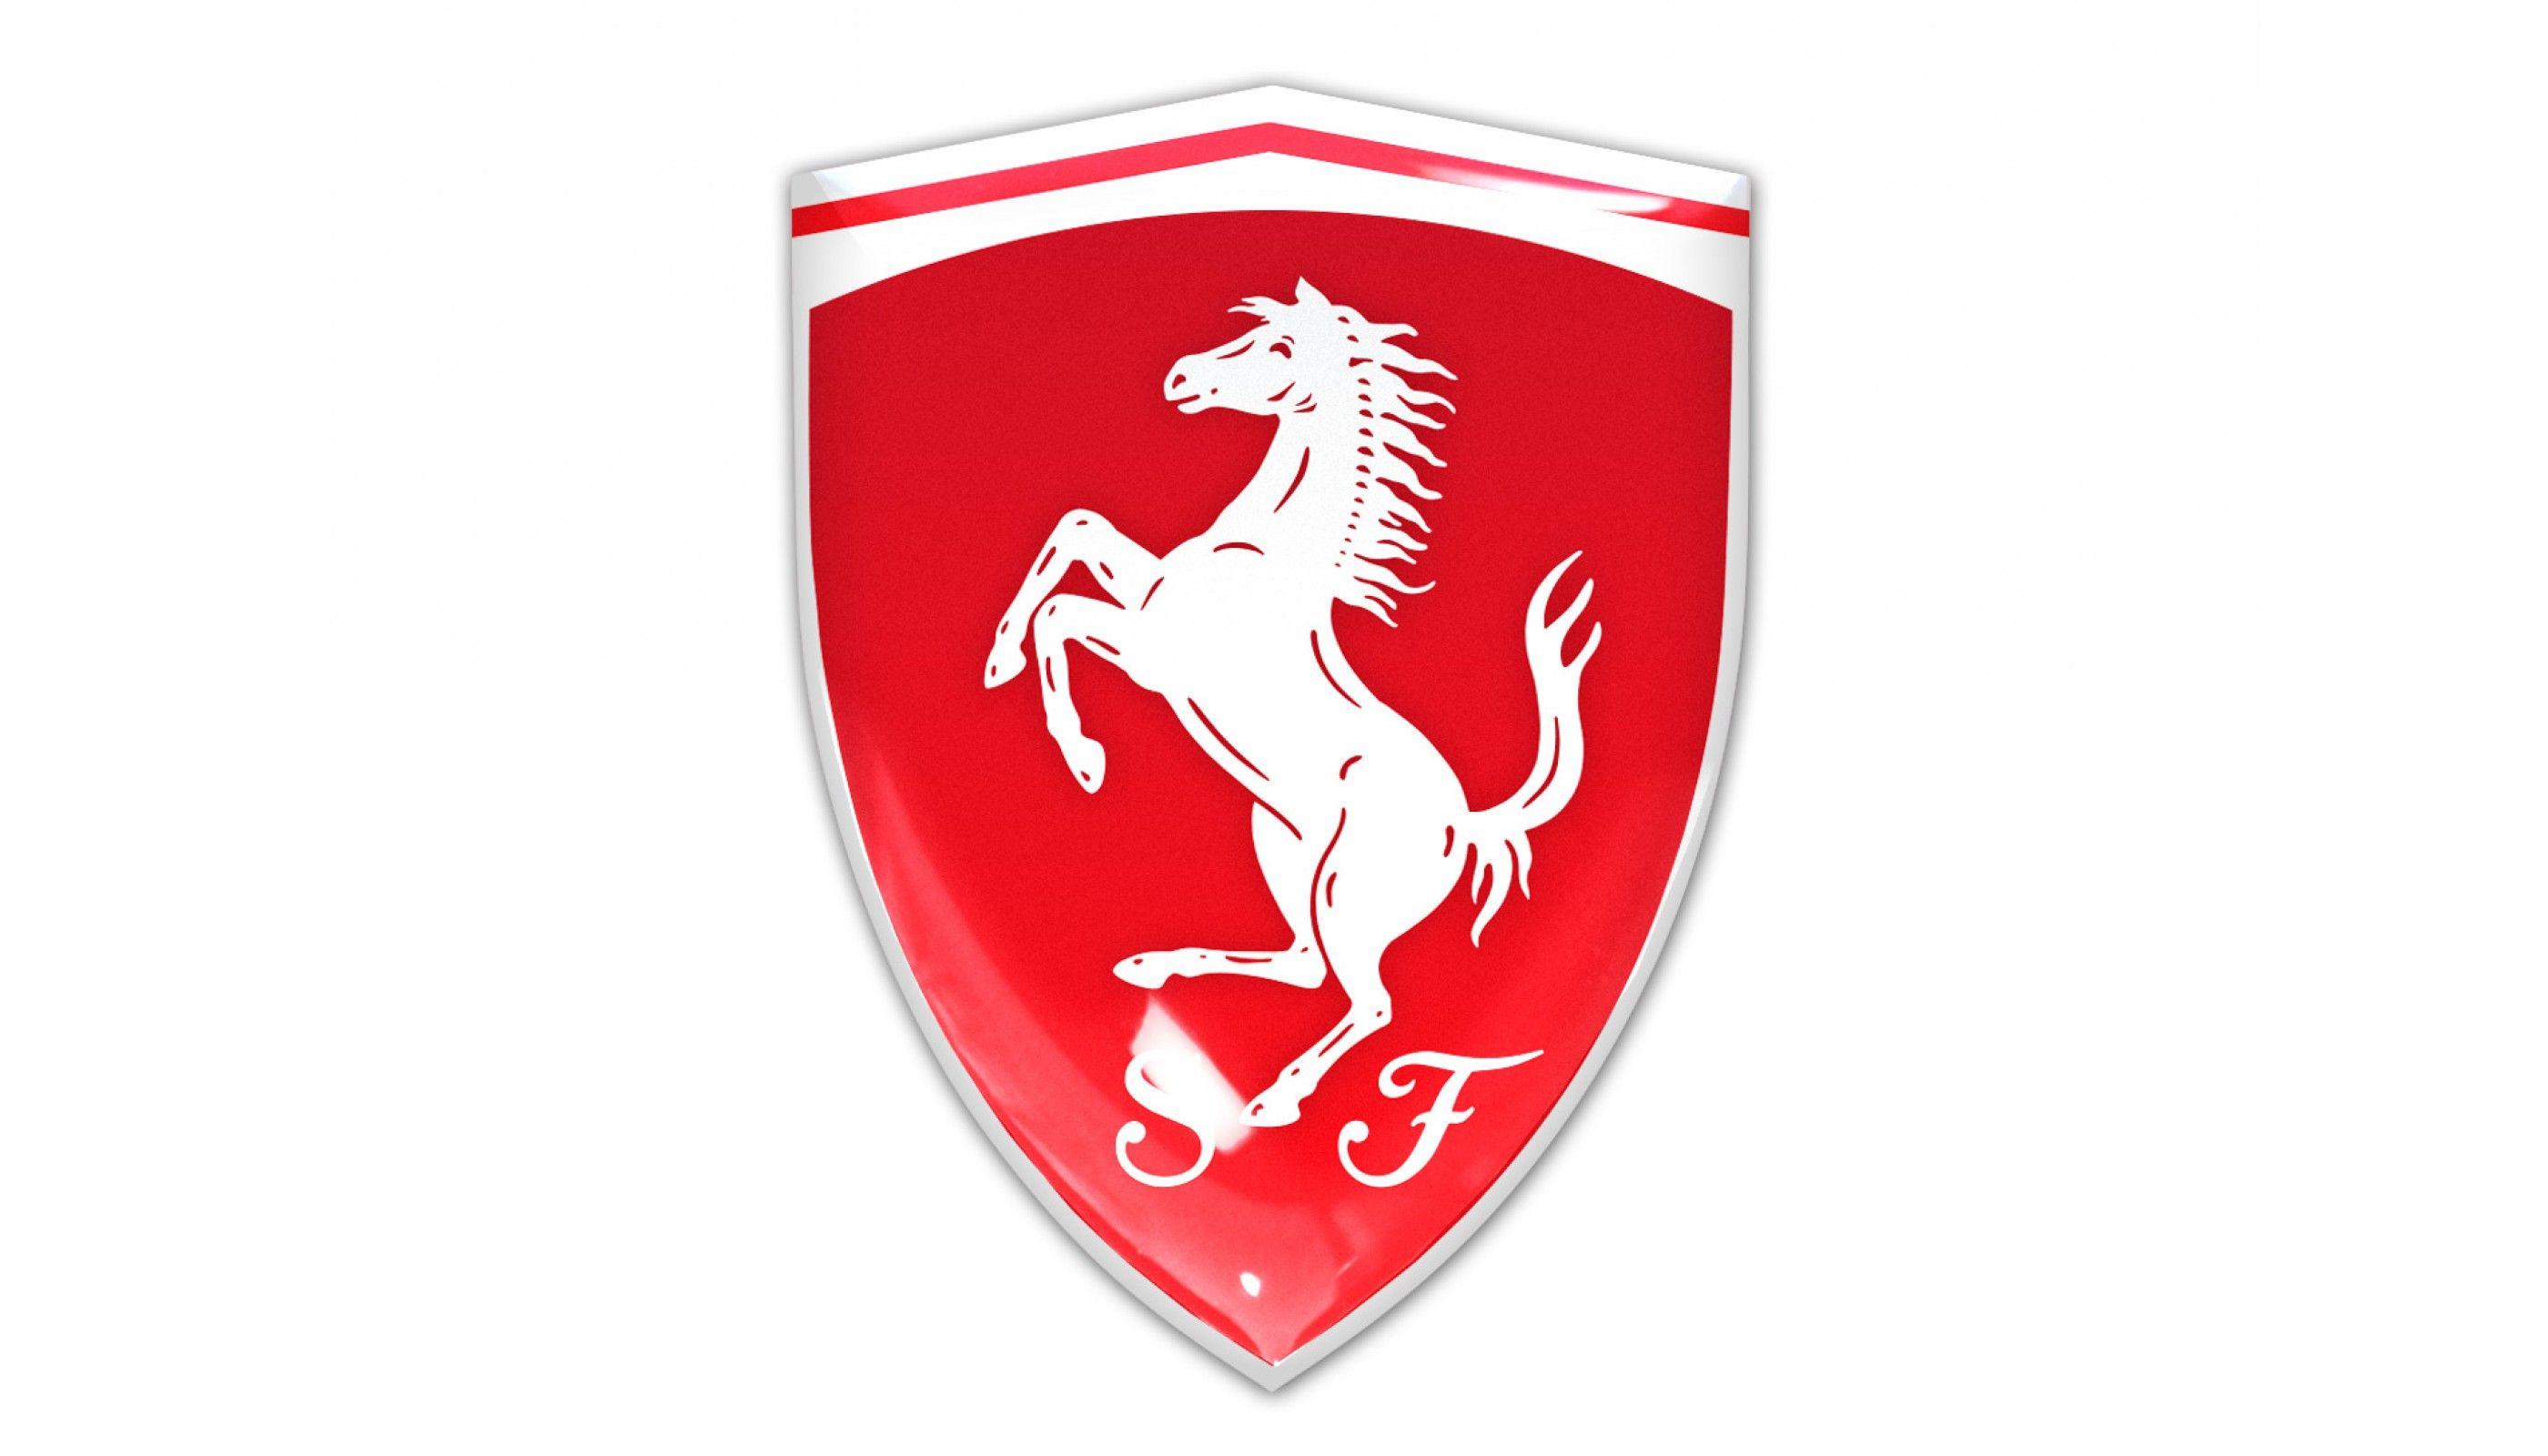 What Car Has a Red Shield Logo - Ferrari Shield Red